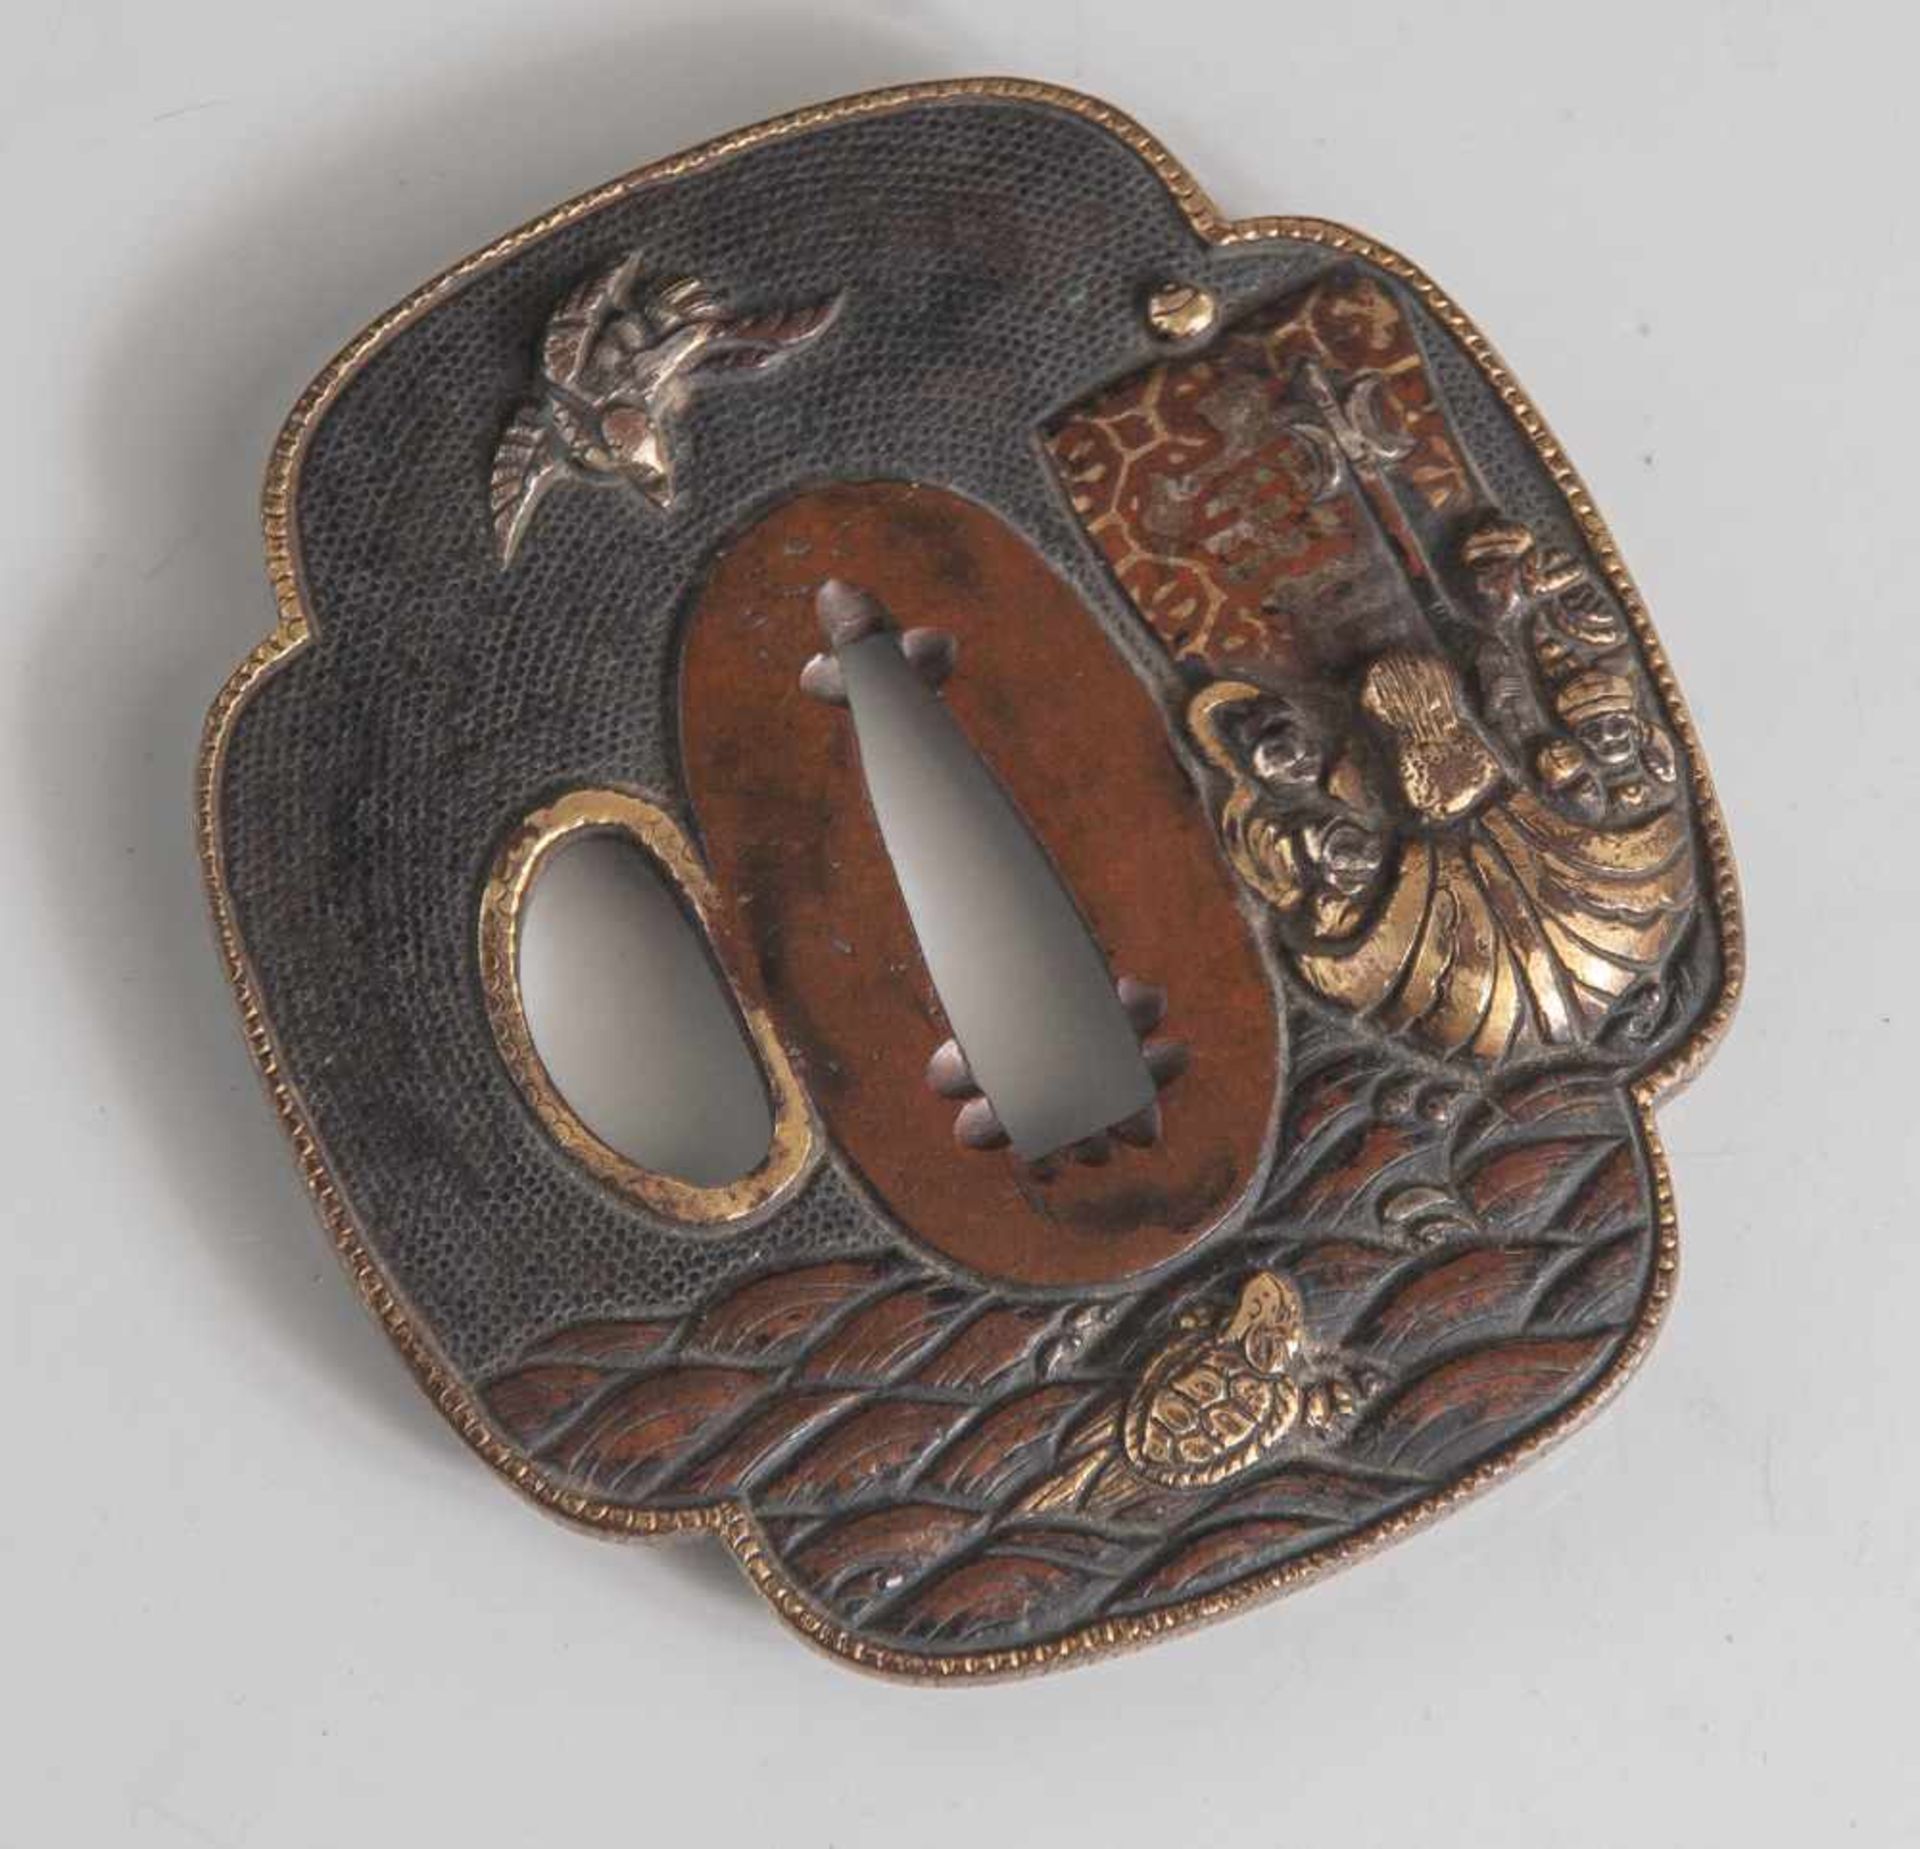 Tsuba, Japan, wohl späte Edo-Periode, Kupfer/Kupferlegierung mit Goldauflage. Dargestelltist eine